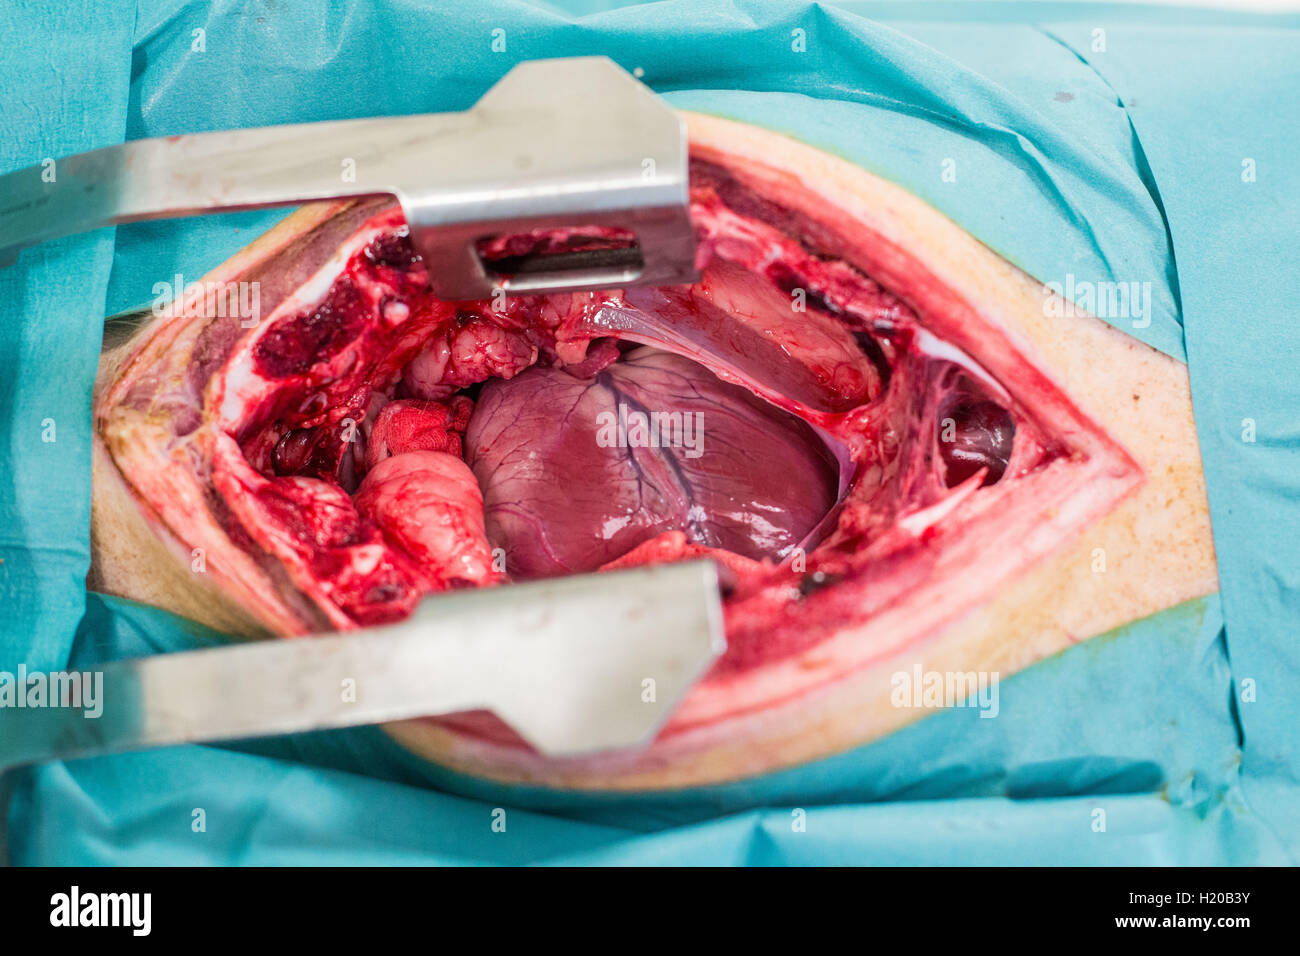 Bloc opératoire, Recherche en cardiologie, Prélèvement d'un coeur de porc. Stock Photo